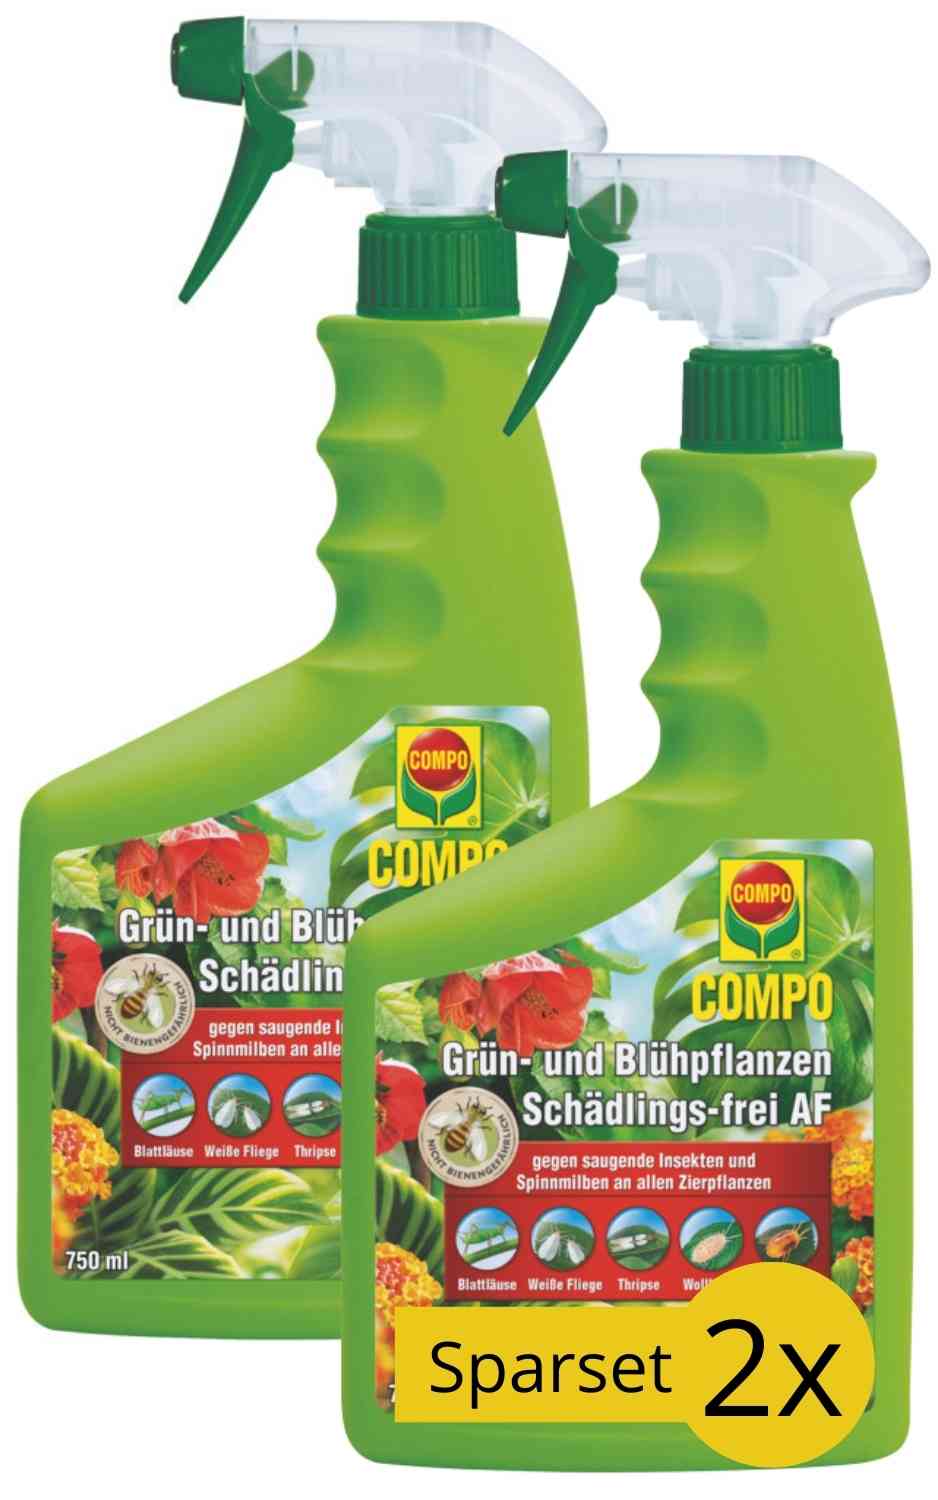 COMPO Grün- und Blühpflanzen Schädlings-frei AF